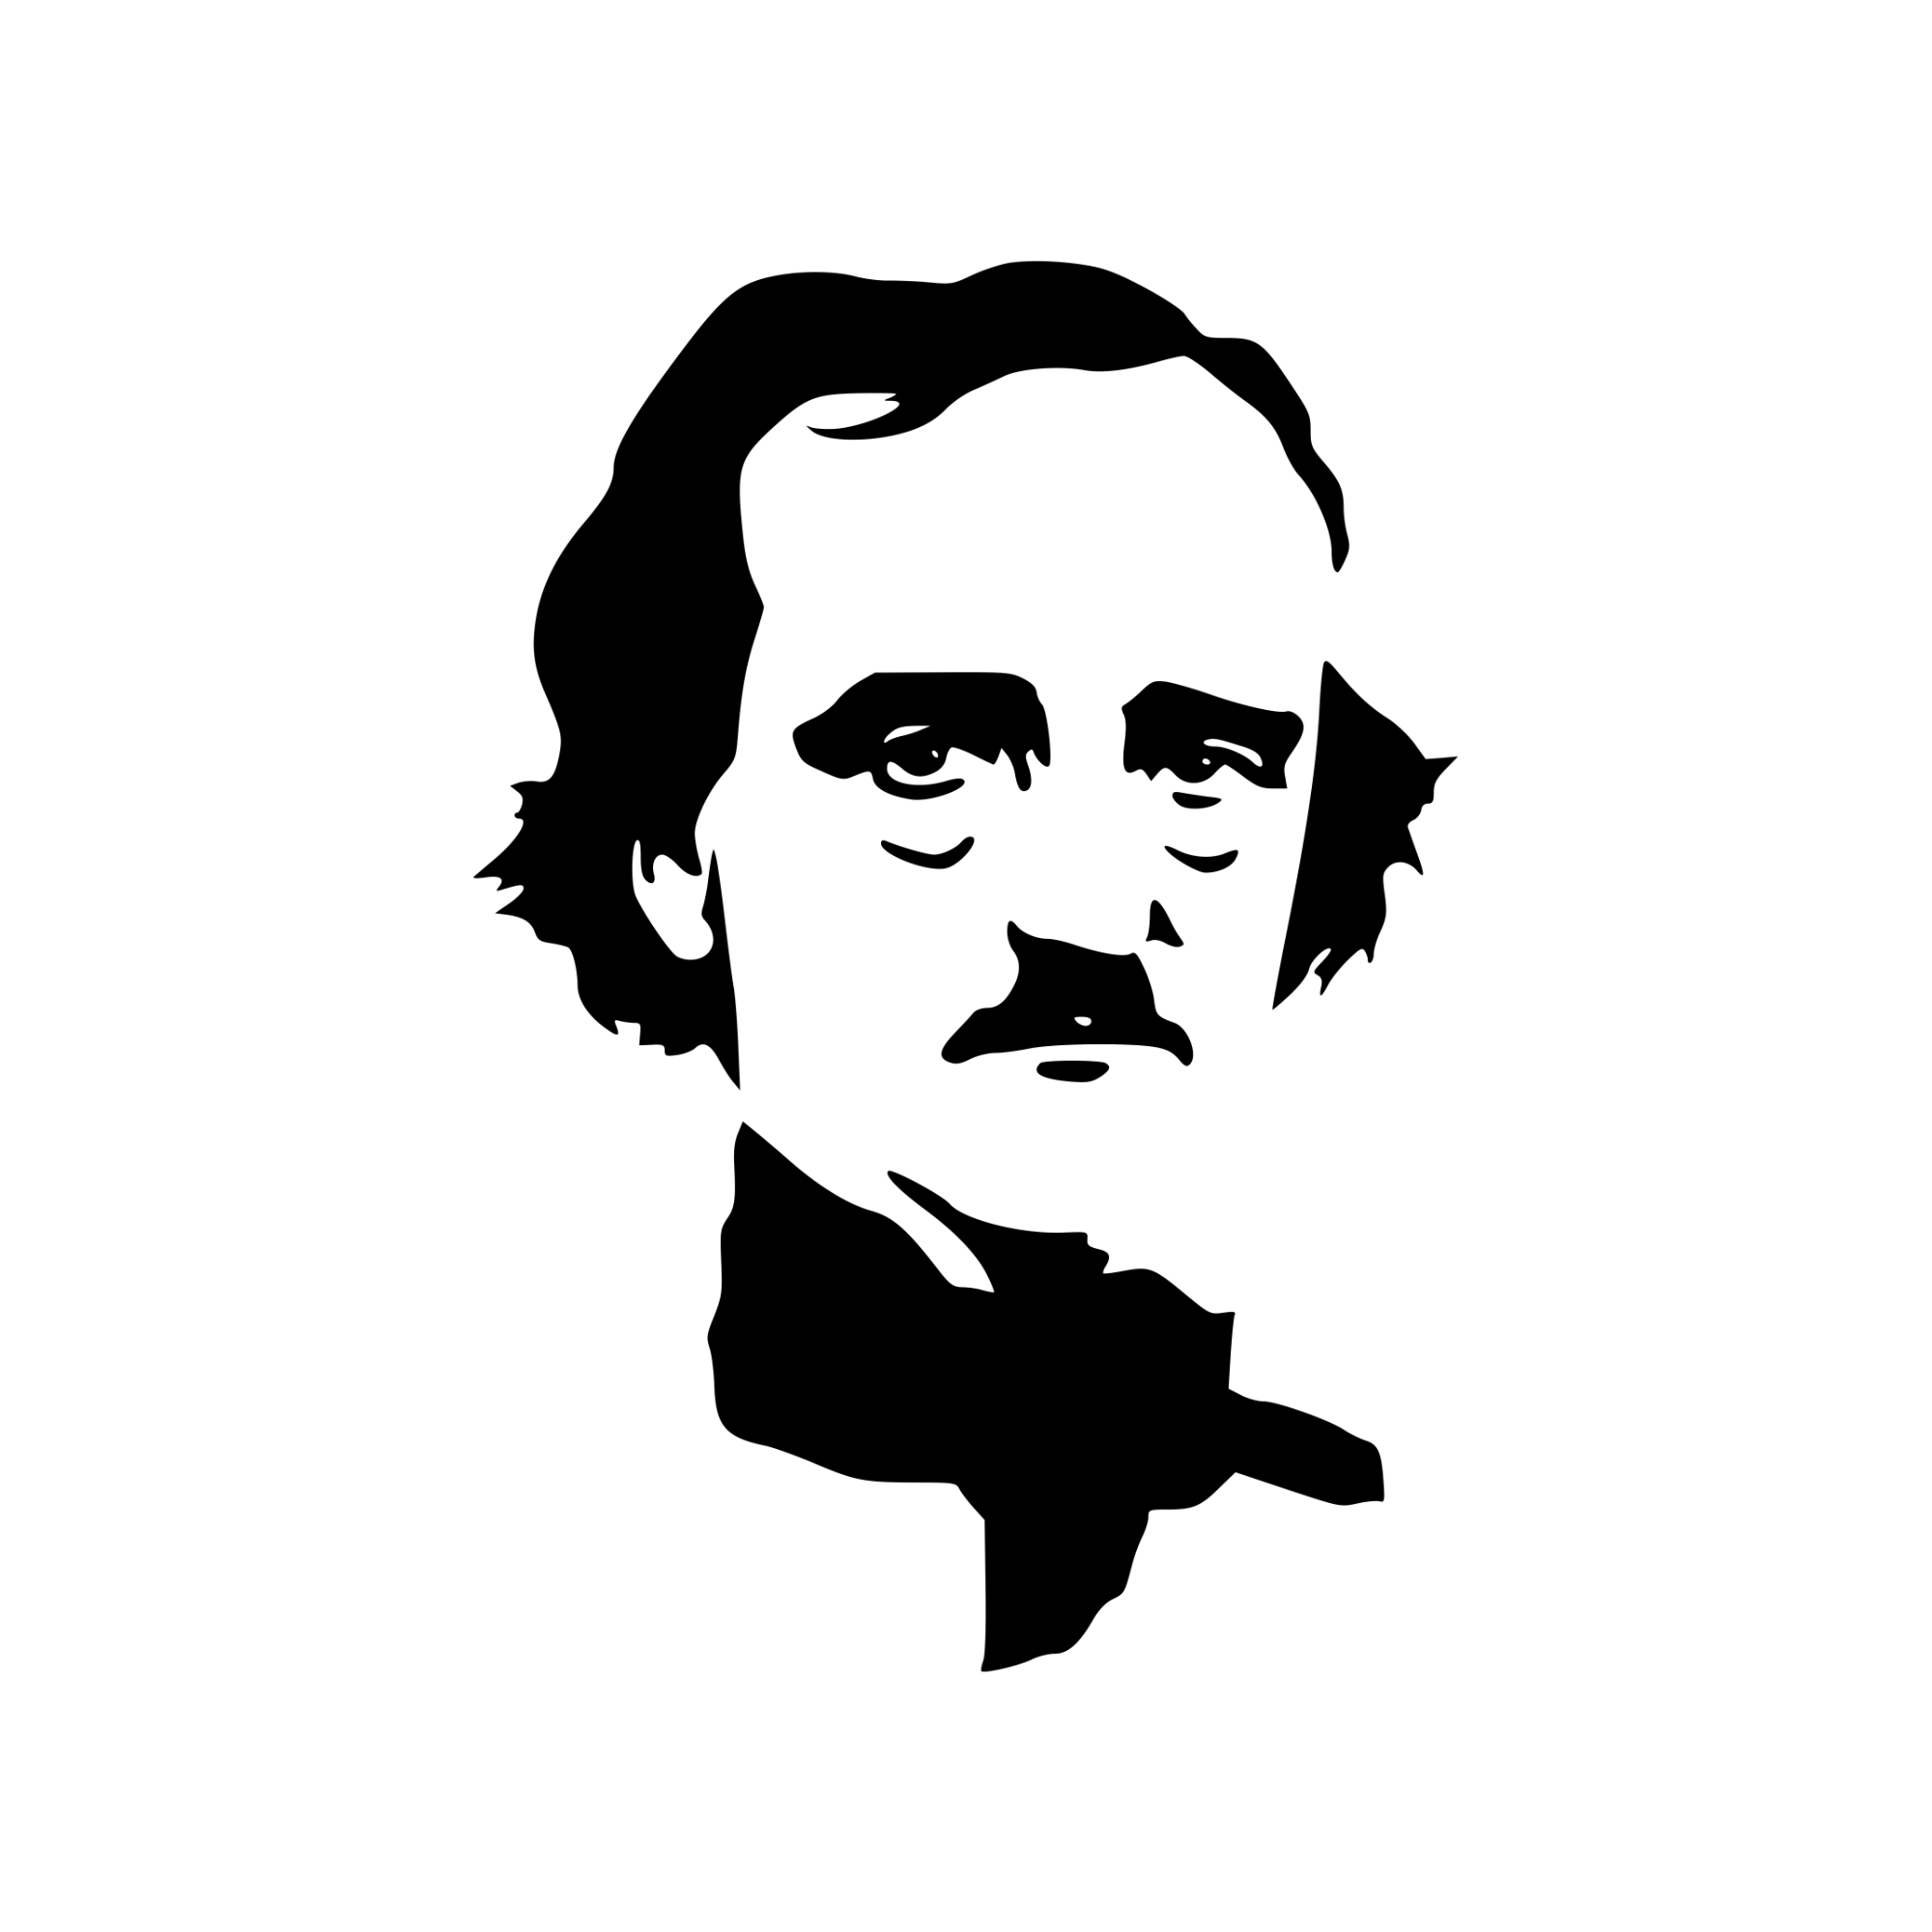 Poe the Poet